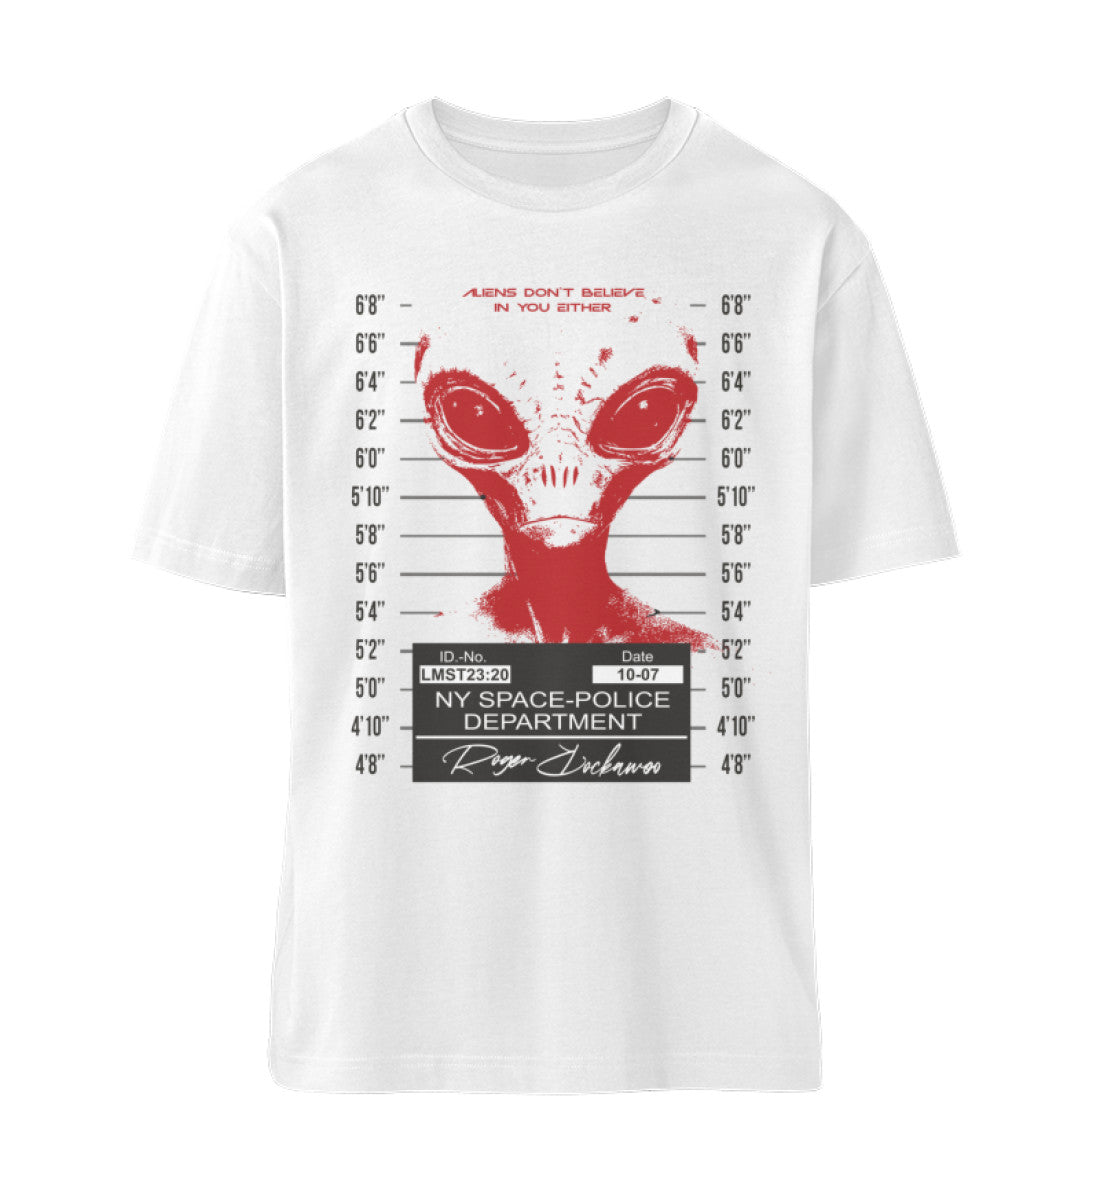 Weißes T-Shirt Unisex Relaxed Fit für Frauen und Männer bedruckt mit dem Design der Roger Rockawoo Kollektion alien space police mugshot